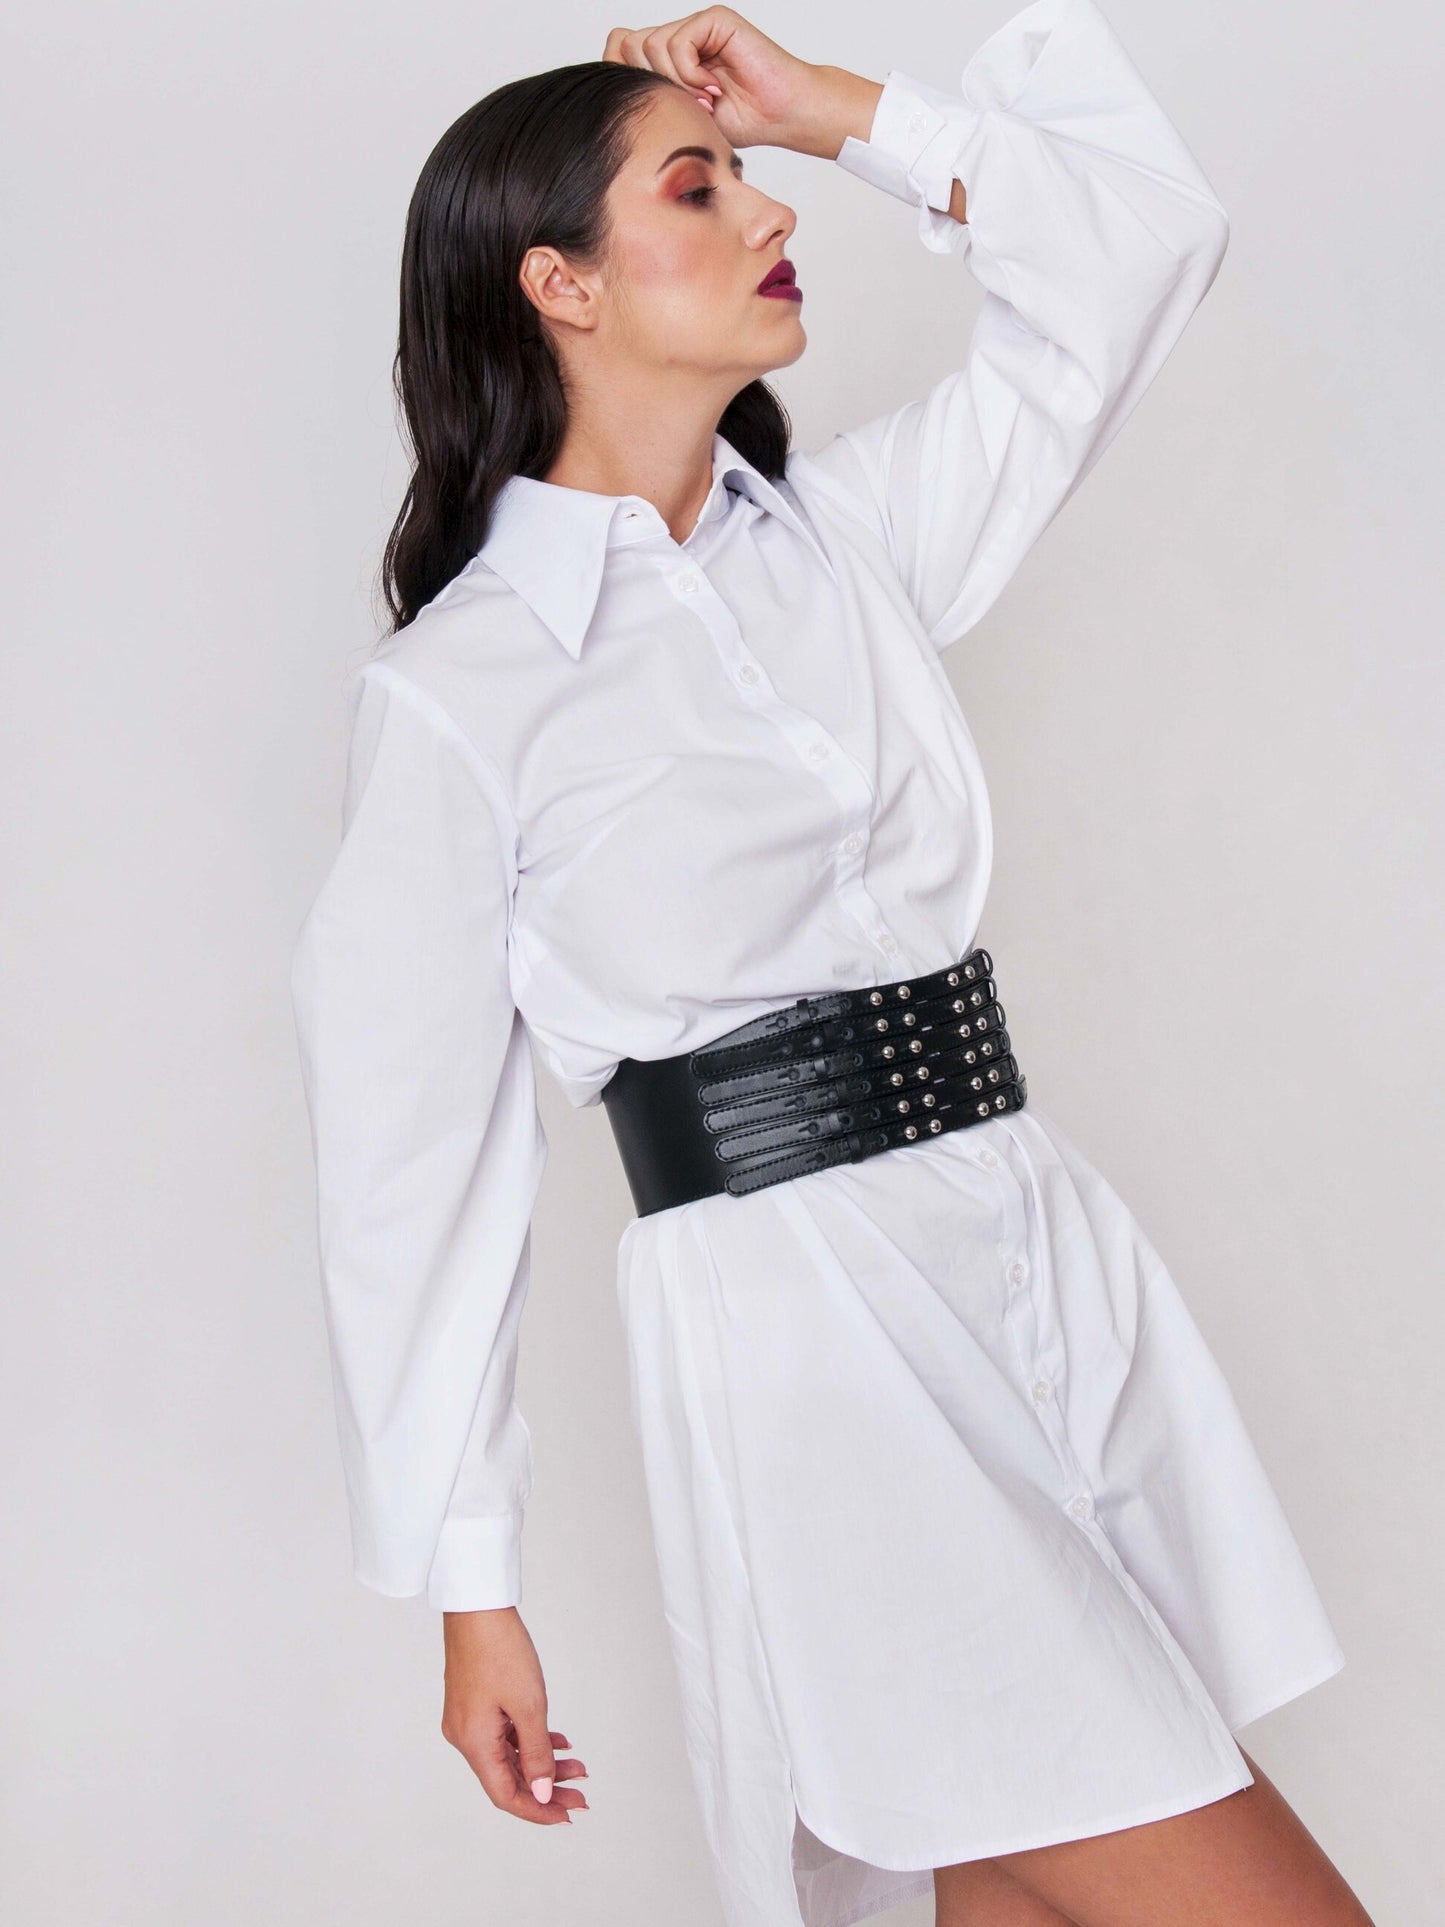 Side view of waist cincher belt worn by a woman over white dress shirt.